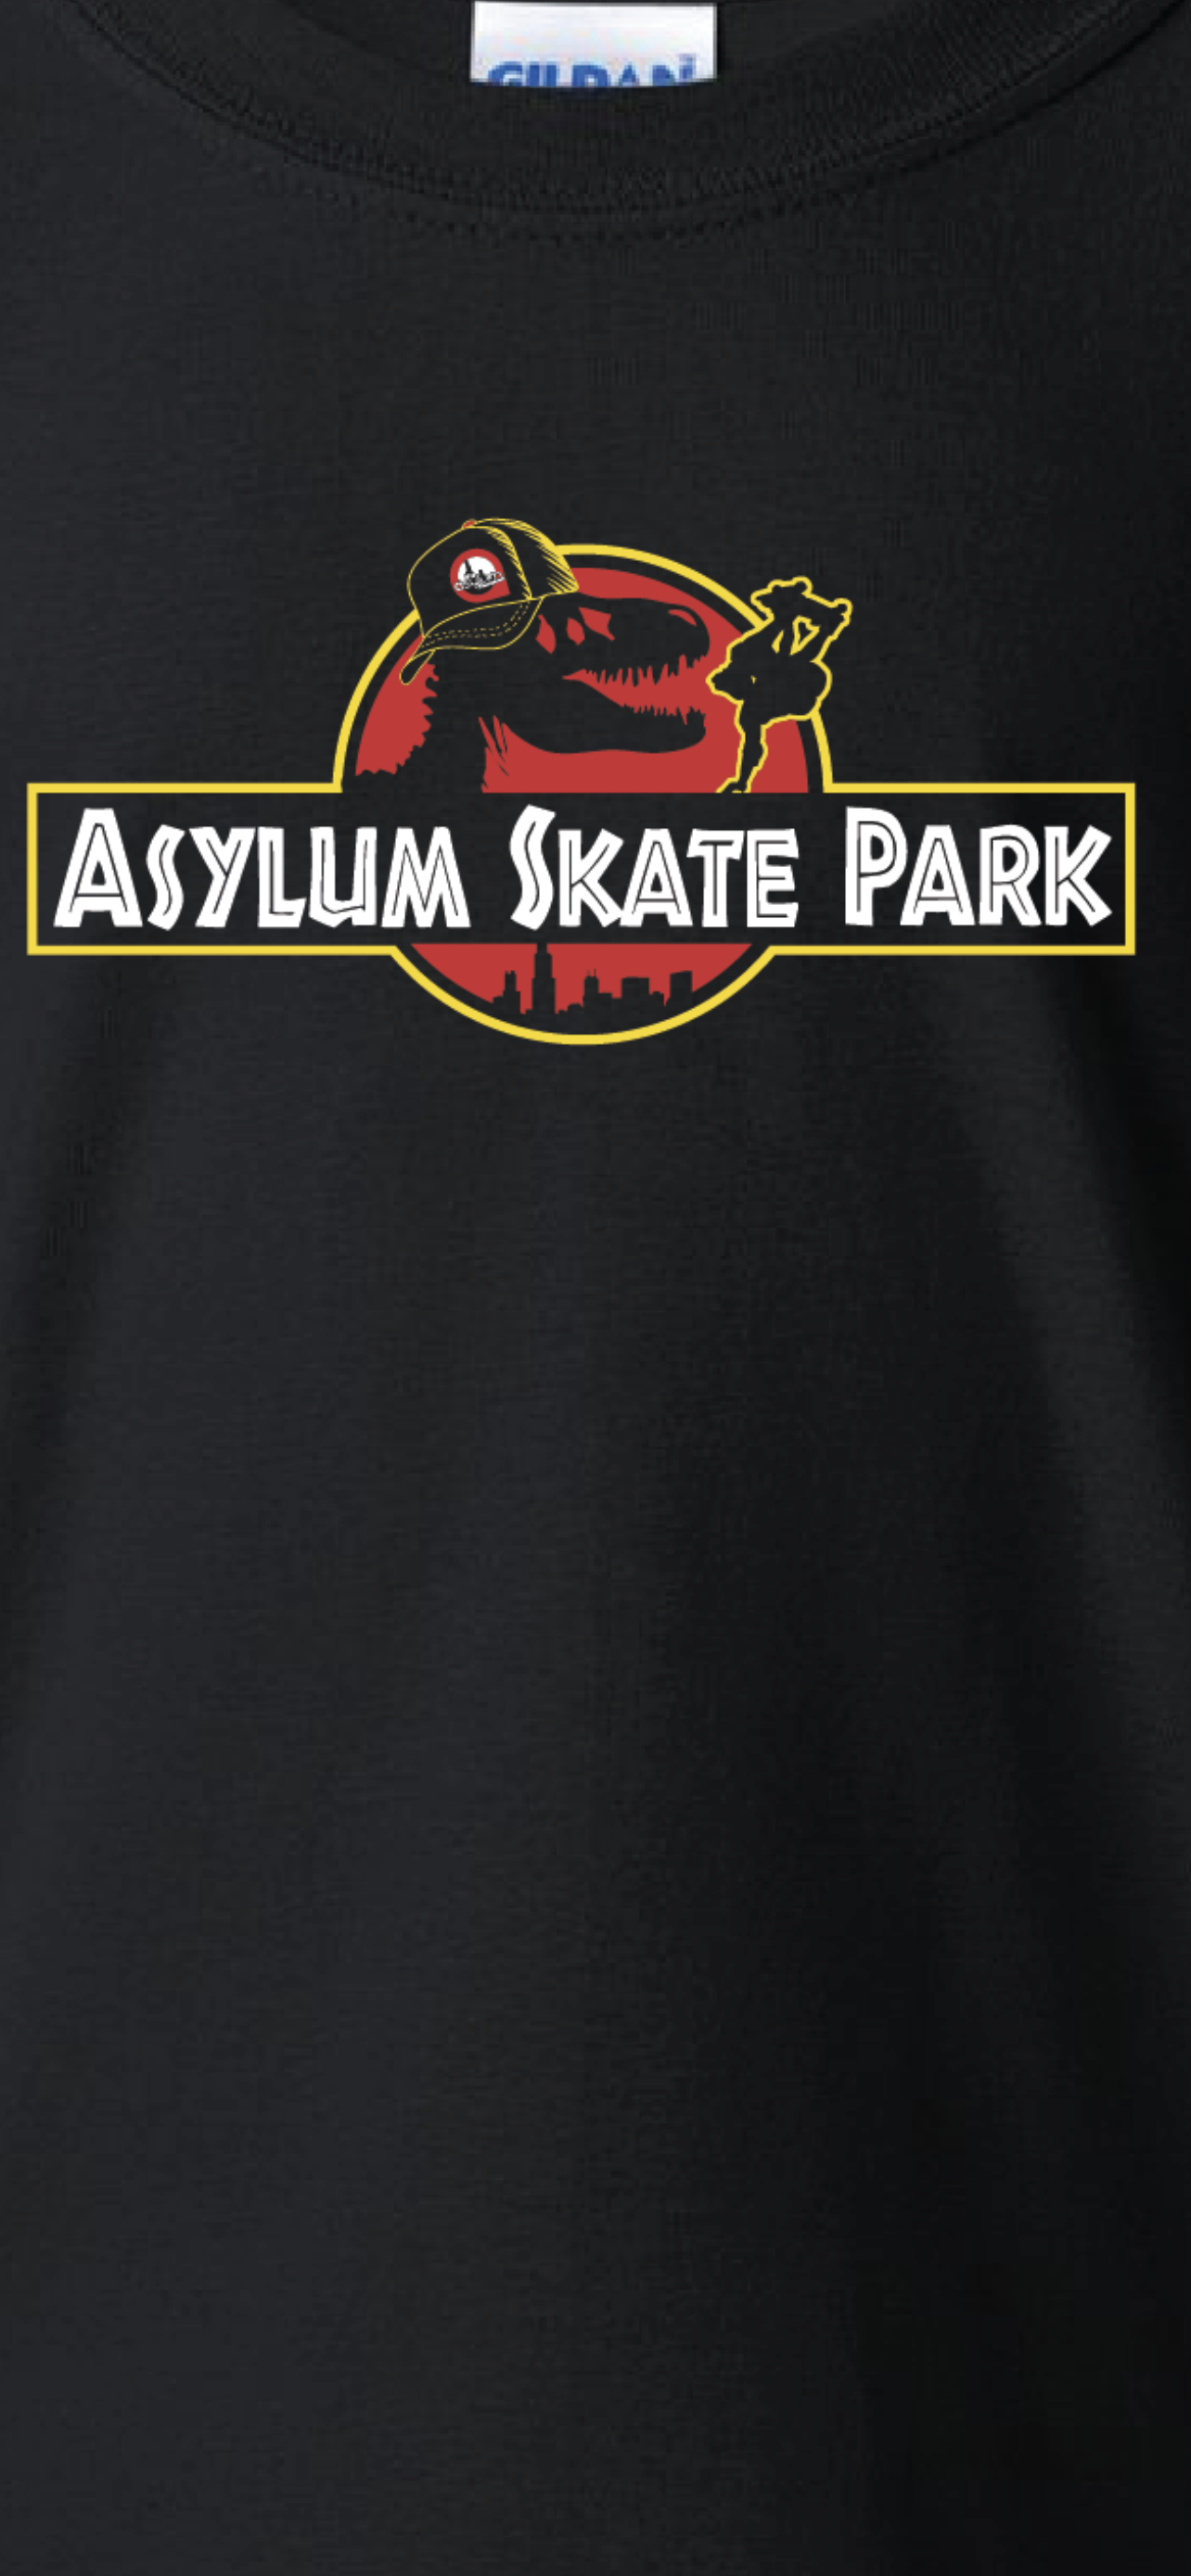 'Asylum Skatepark' T-Shirt (Jurassic Park Collab)